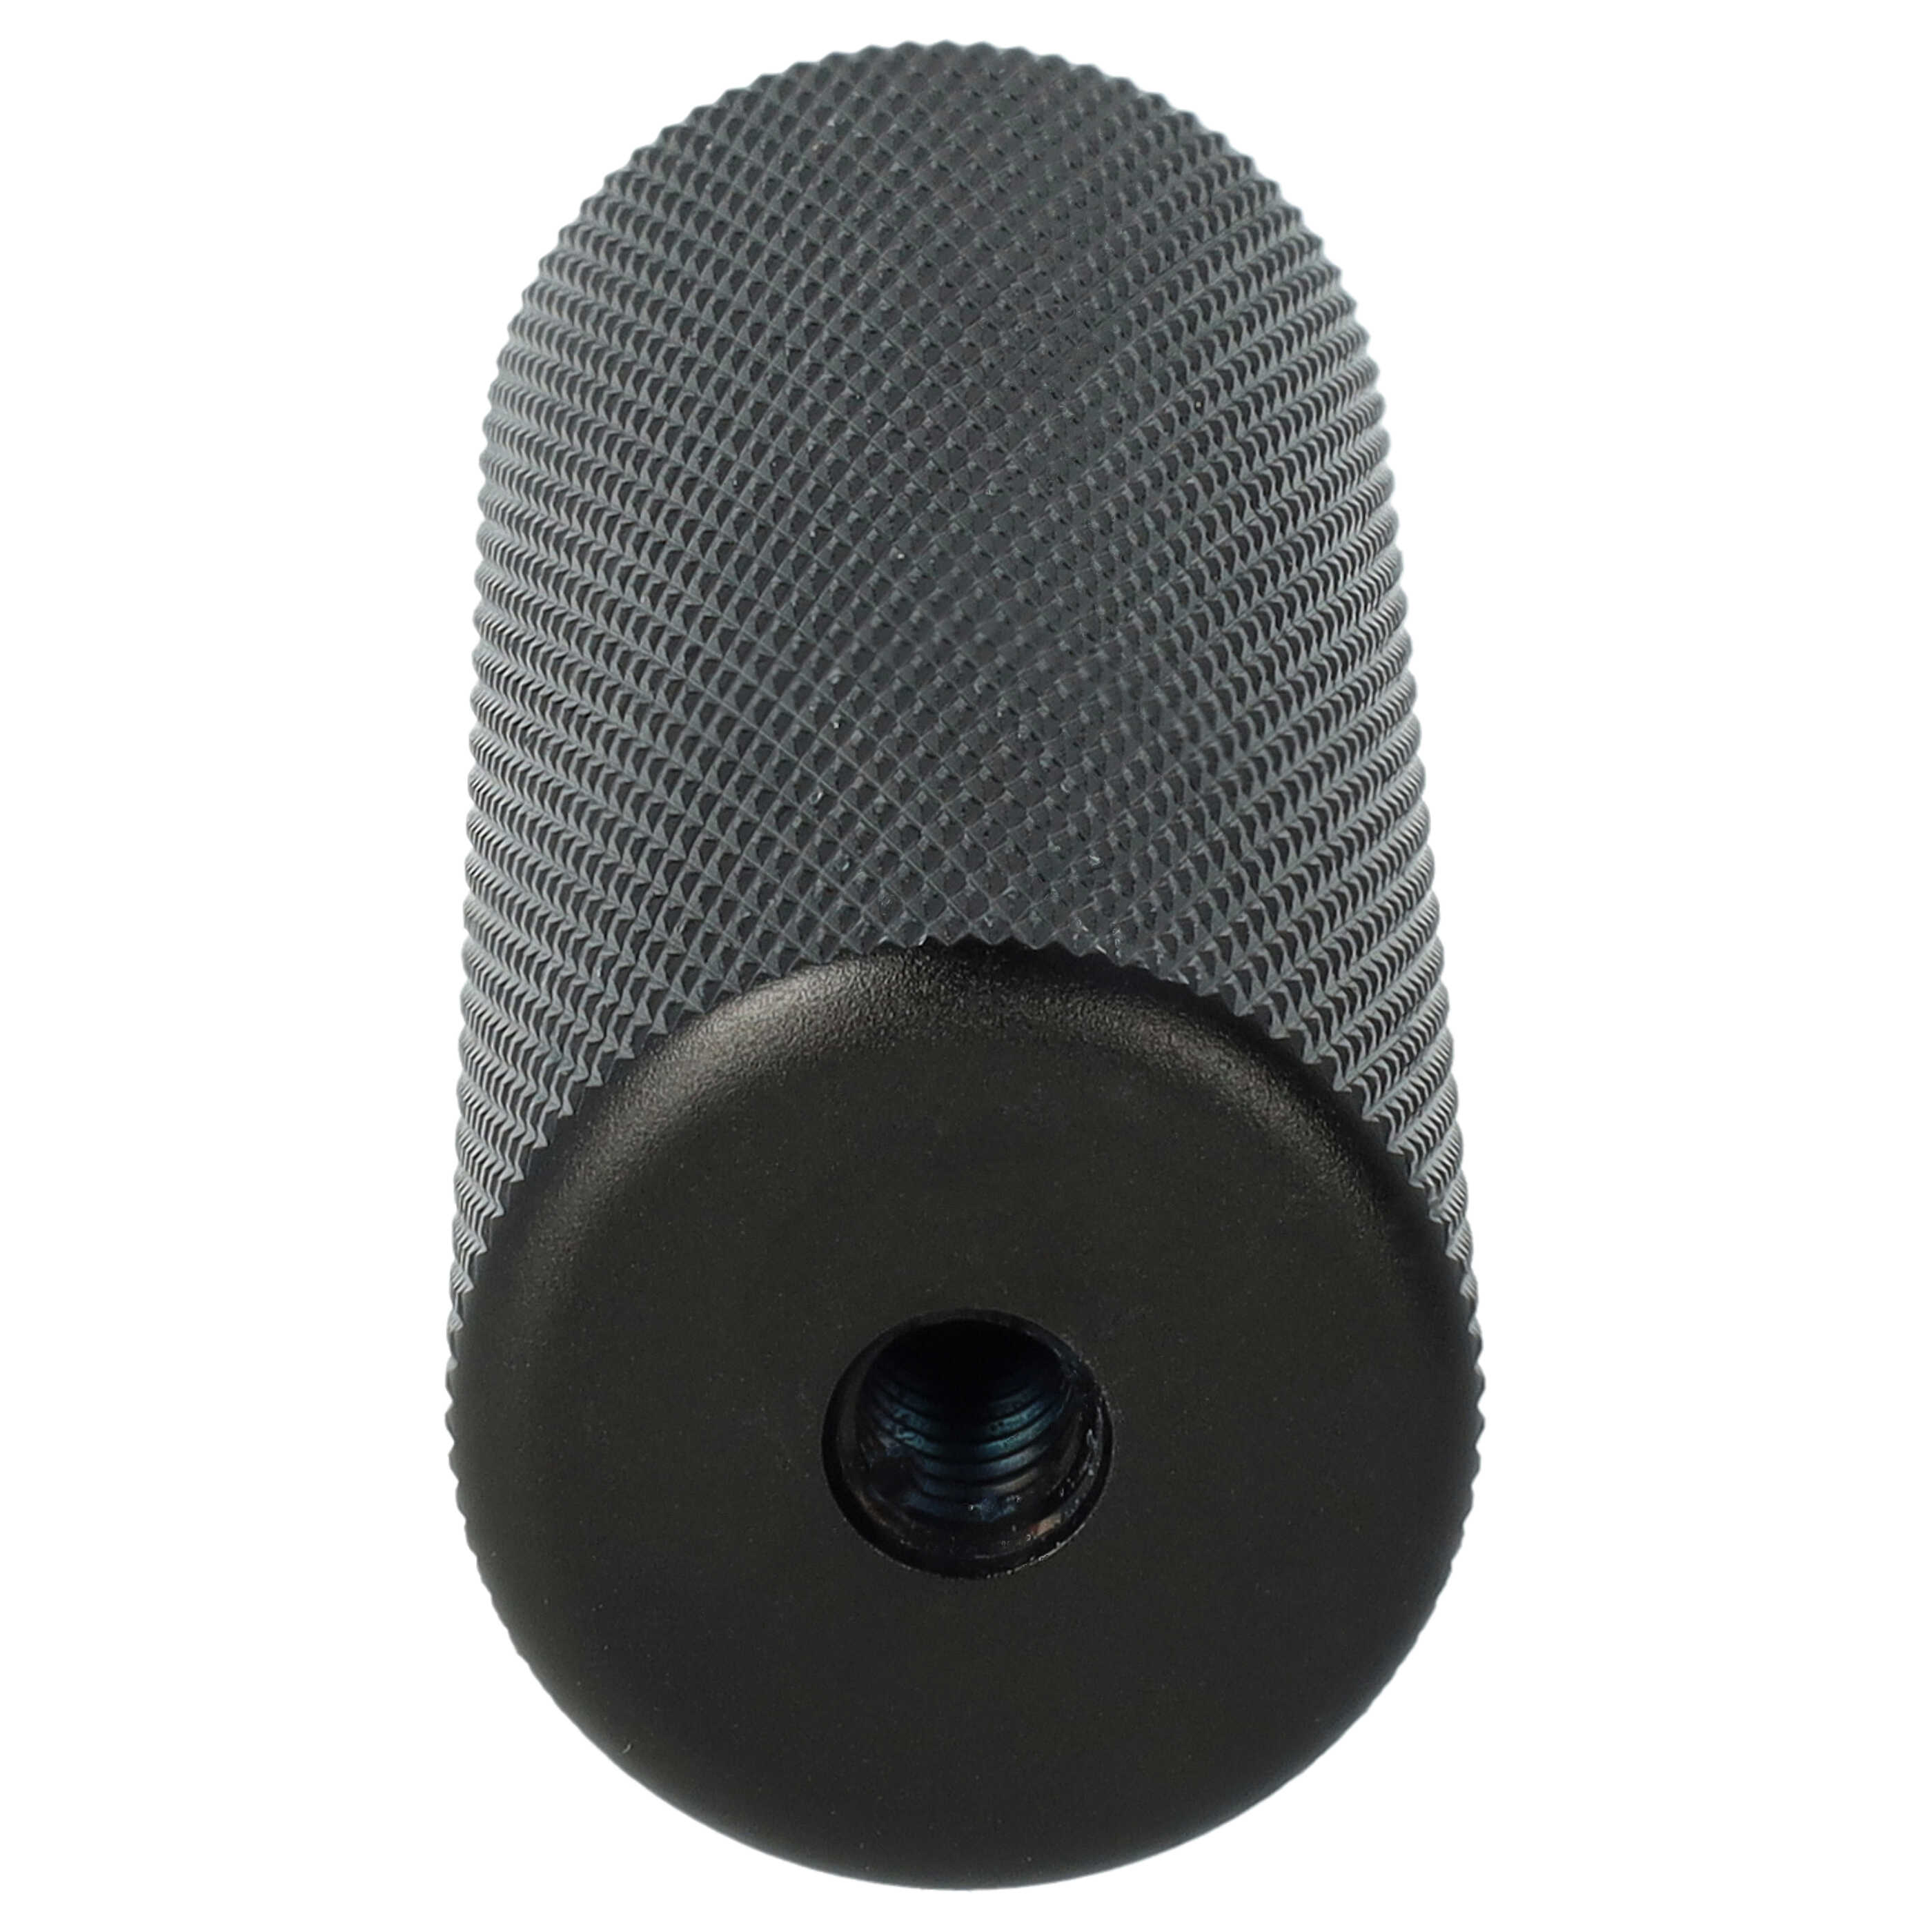 Empuñadura para cámaras y videocámaras con rosca de trípode de 1/4" - Trípode negro